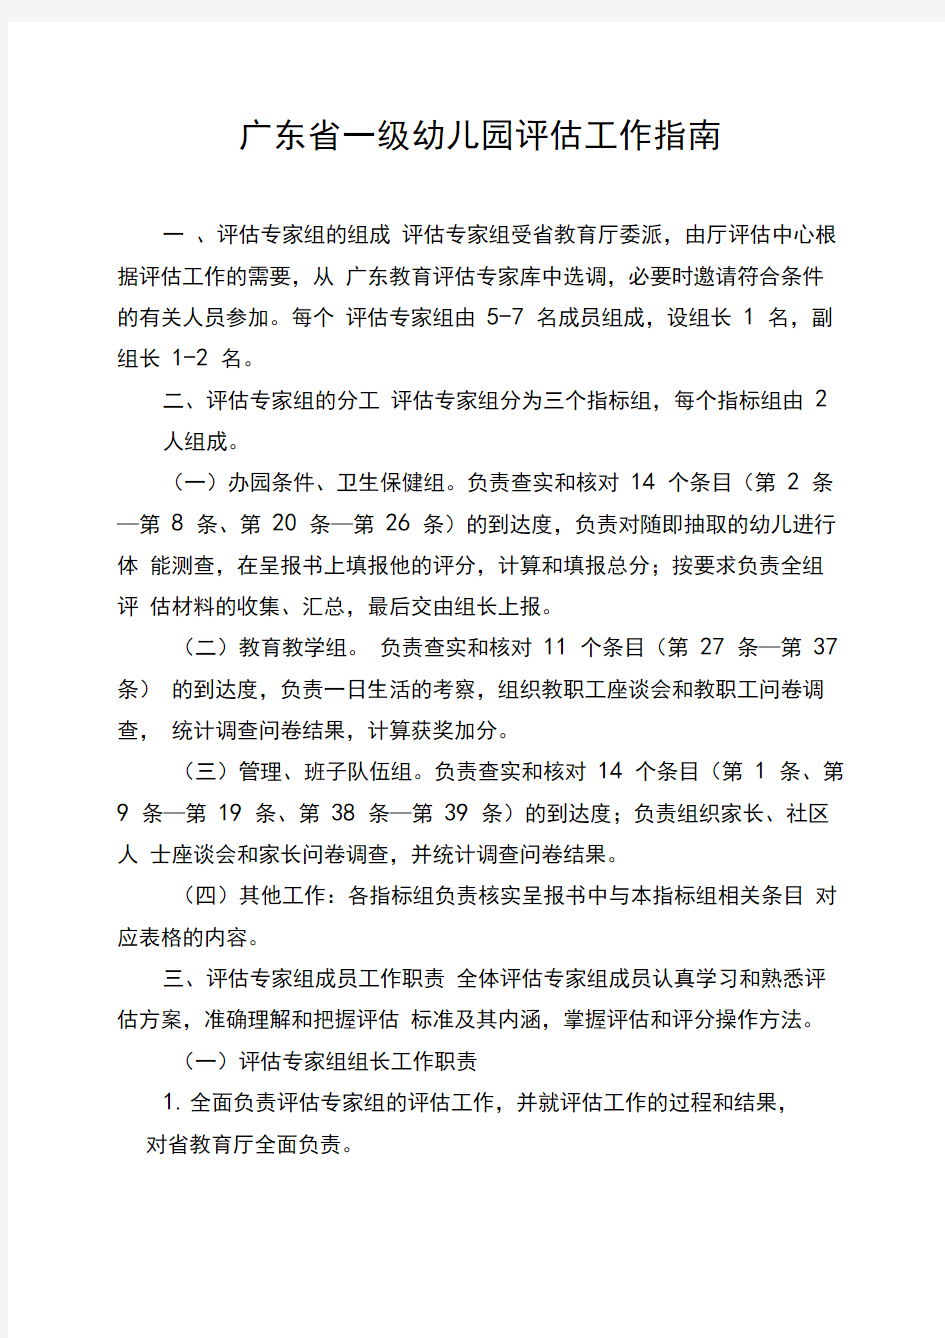 广东省一级幼儿园评估工作指南